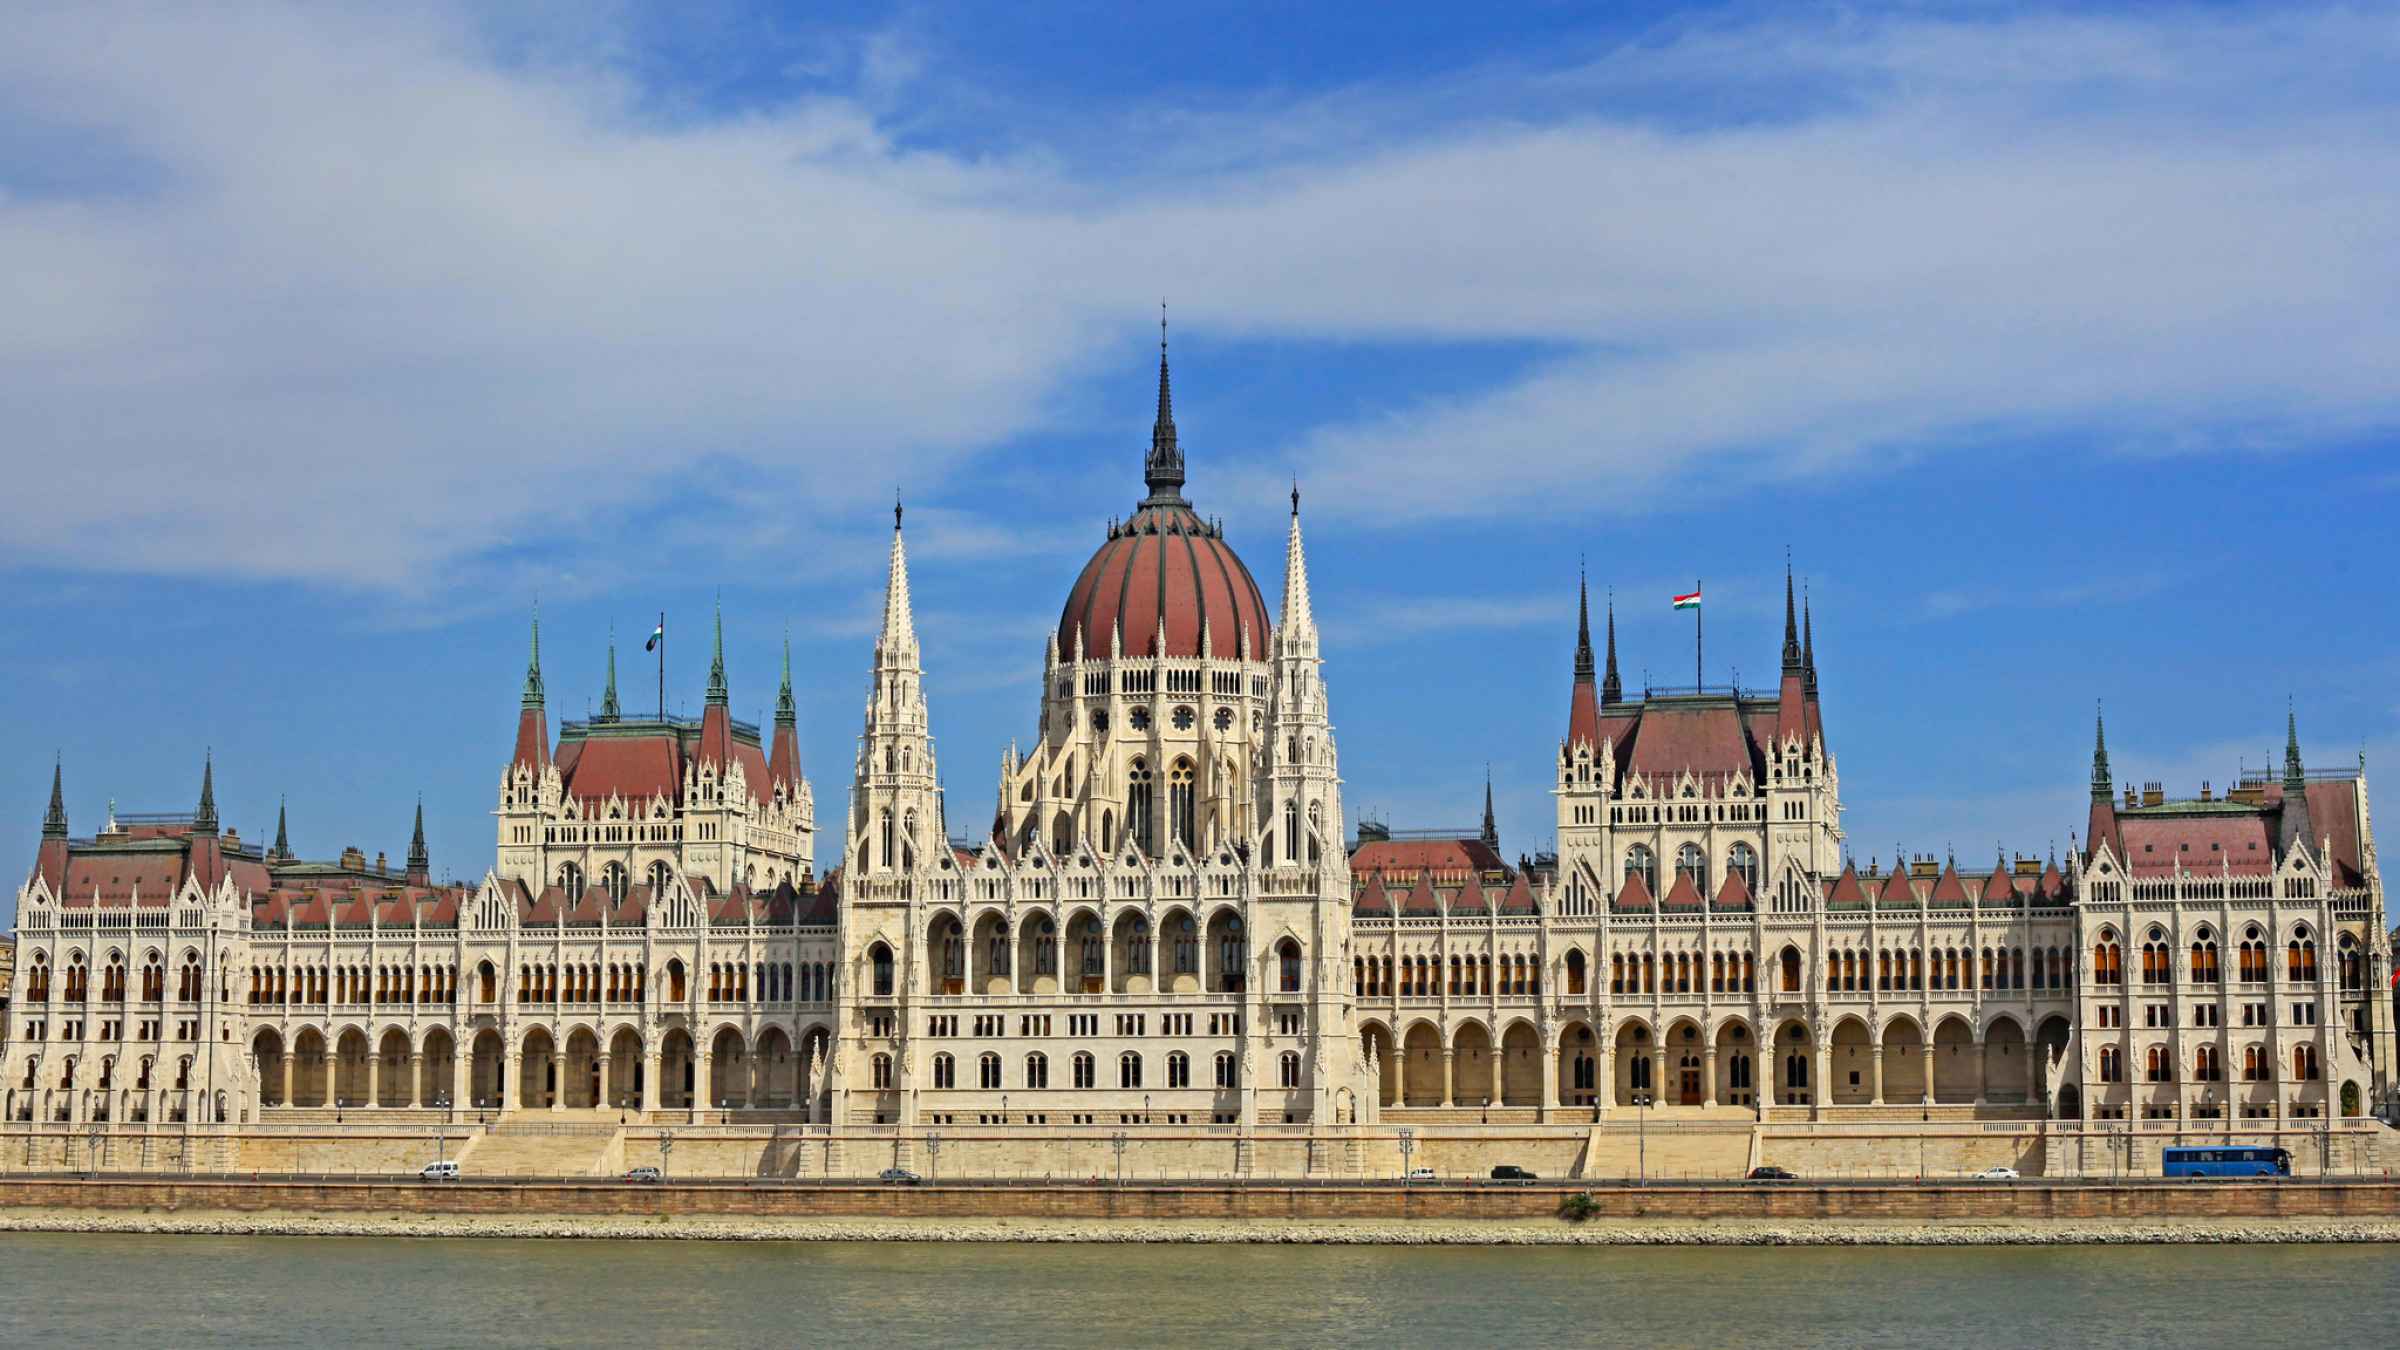 tour budapest parliament